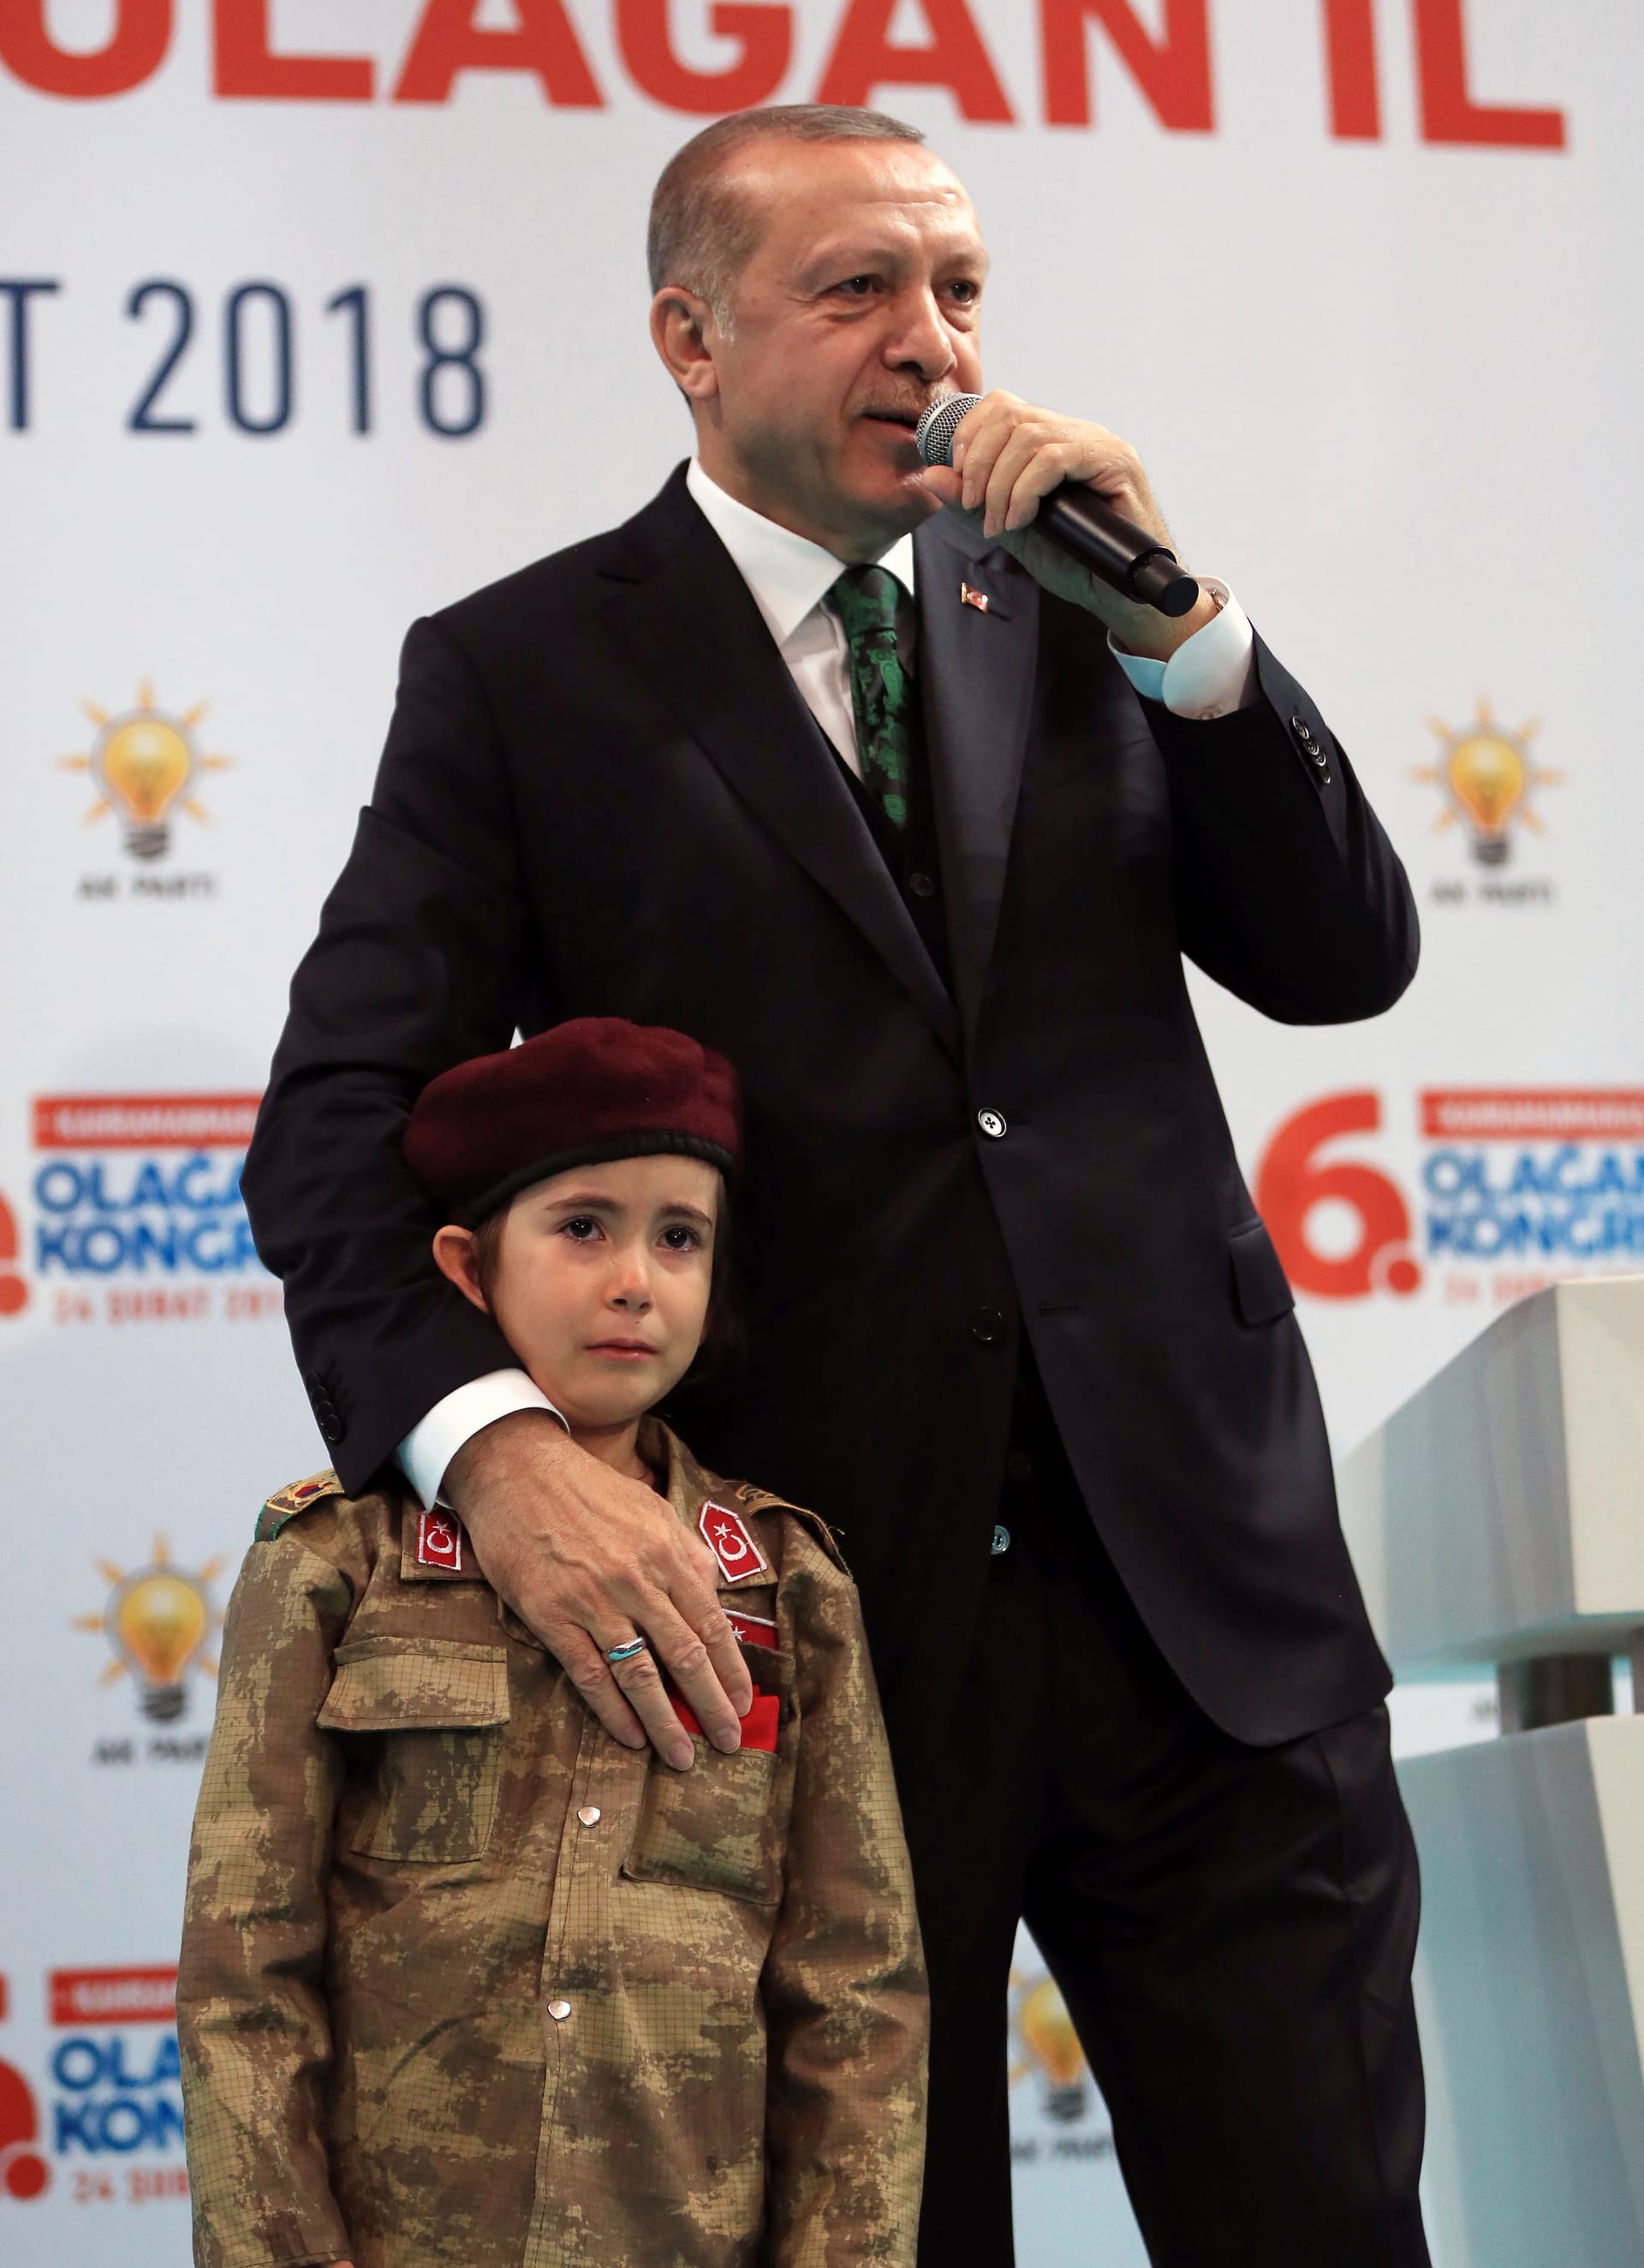 Präsident mit kleinem Mädchen: Erdogan versuchte bei der AKP-Veranstaltung das Kind in Soldatenuniform zu trösten.